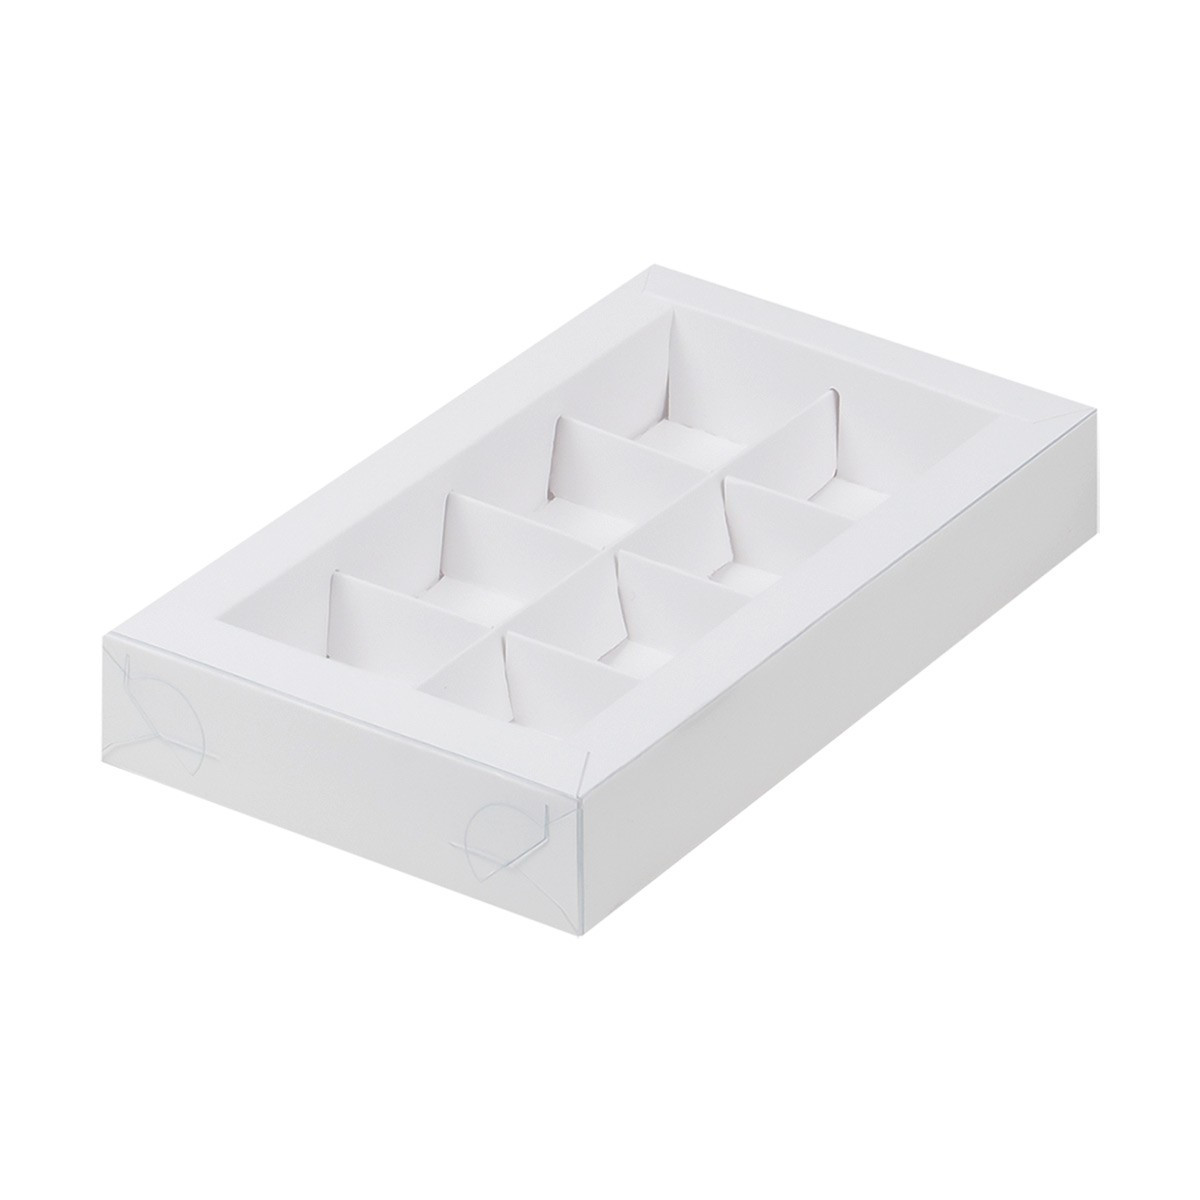 Коробка для 8 конфет Белая с пластиковой крышкой (Россия, 190х110х30 мм) 050011